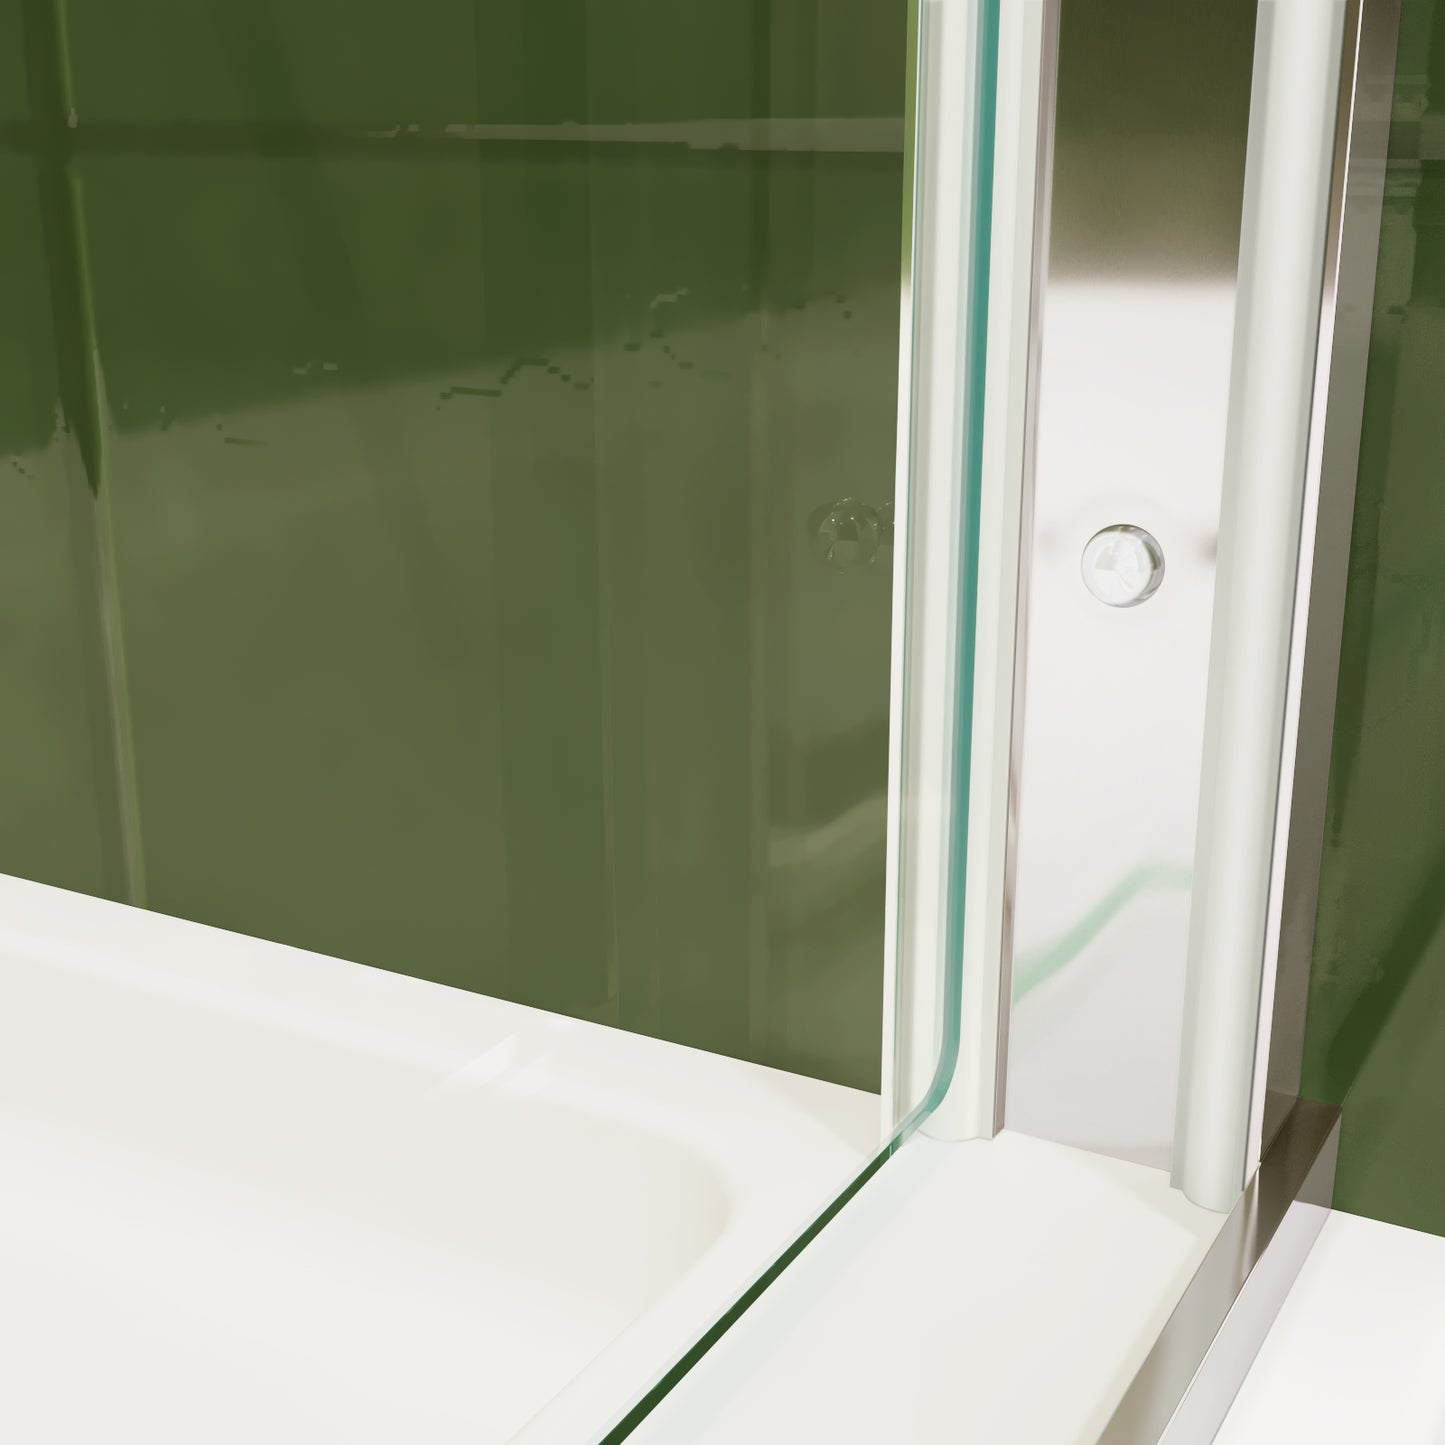 ace decor Sliding Glass Shower Doors Semi-Frameless color:chrome